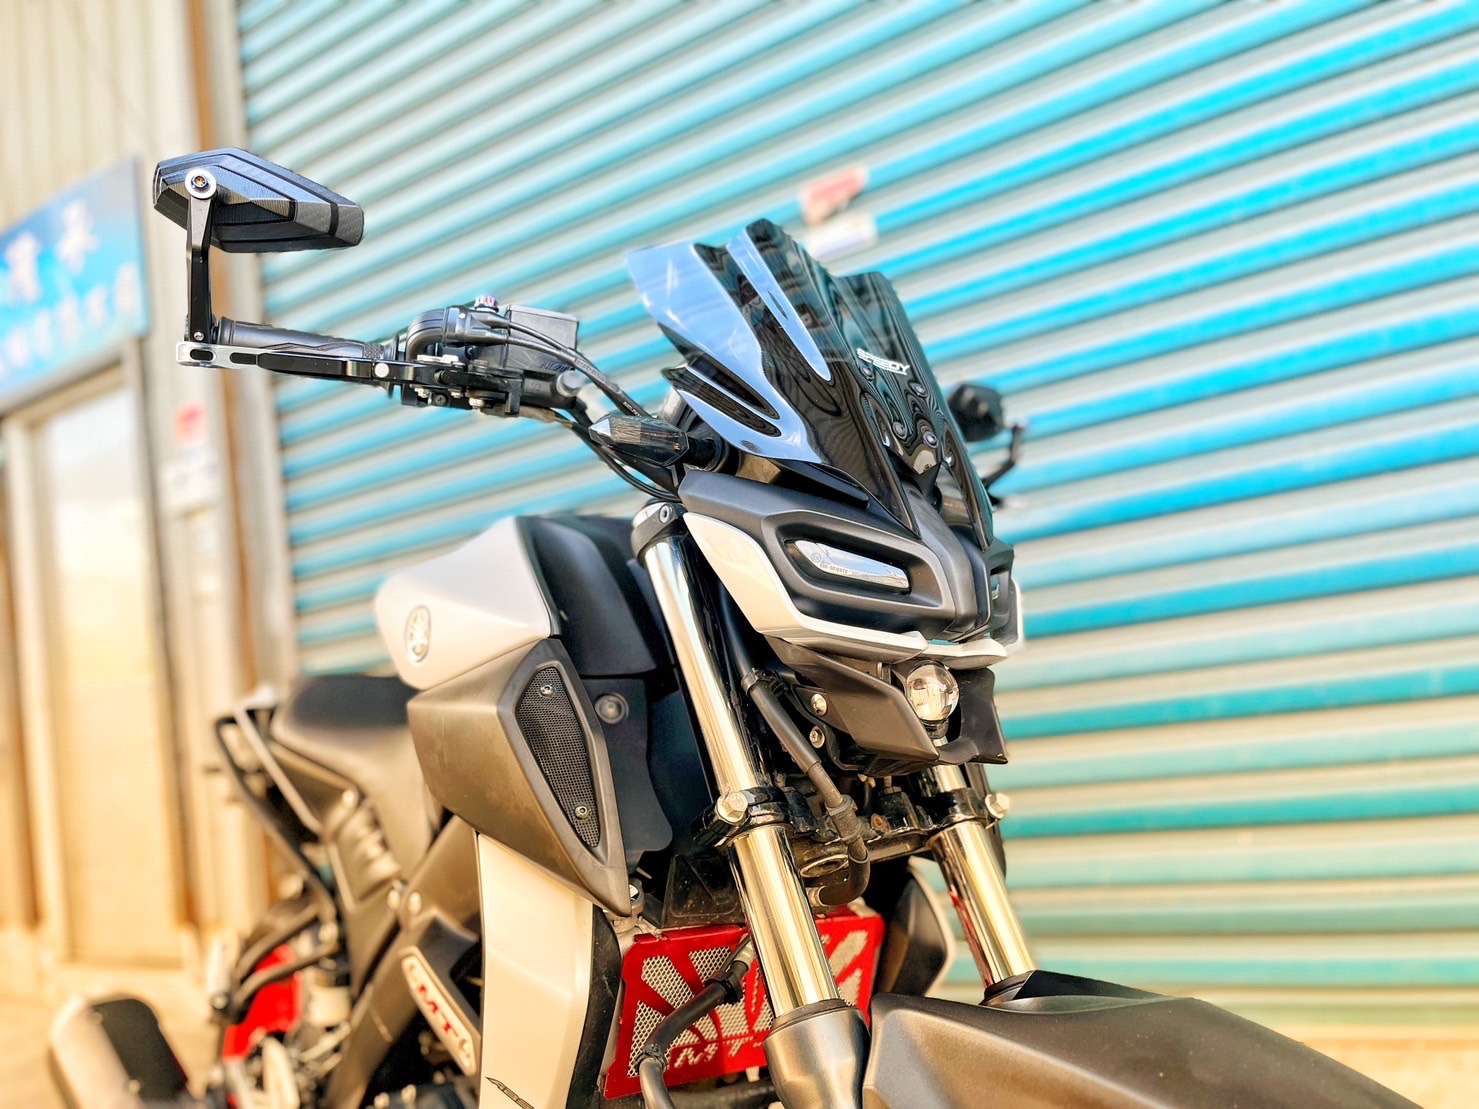 【小資族二手重機買賣】YAMAHA MT-15 - 「Webike-摩托車市」 超多改裝 無摔無事故 小資族二手重機買賣